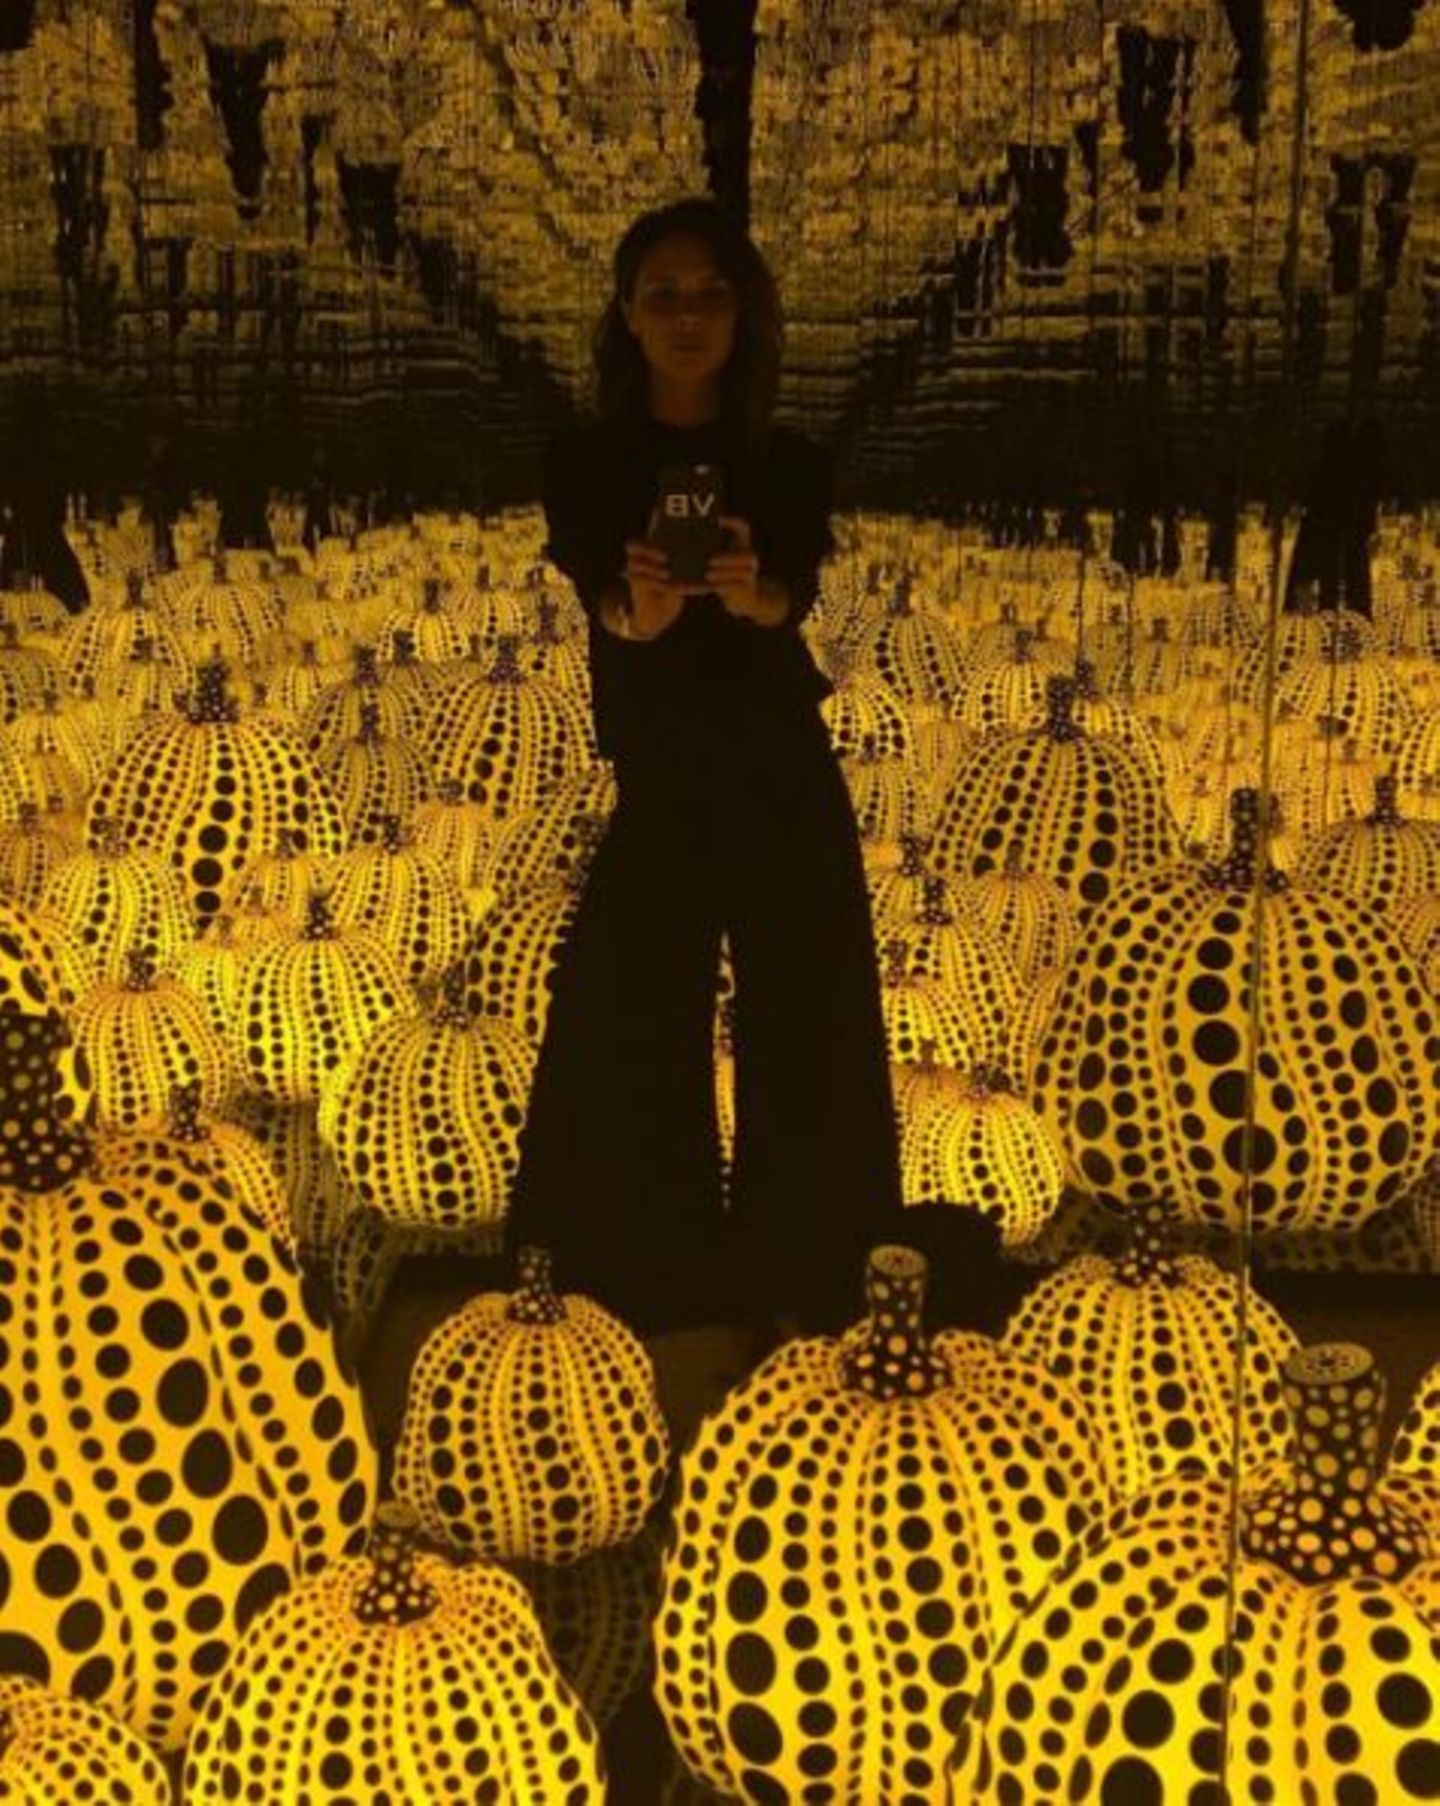 Victoria Beckham besucht in London eine Ausstellung der japanischen Künstlerin Yayoi Kusama und fotografiert sich inmitten von leuchtenden Kürbisskulpturen.